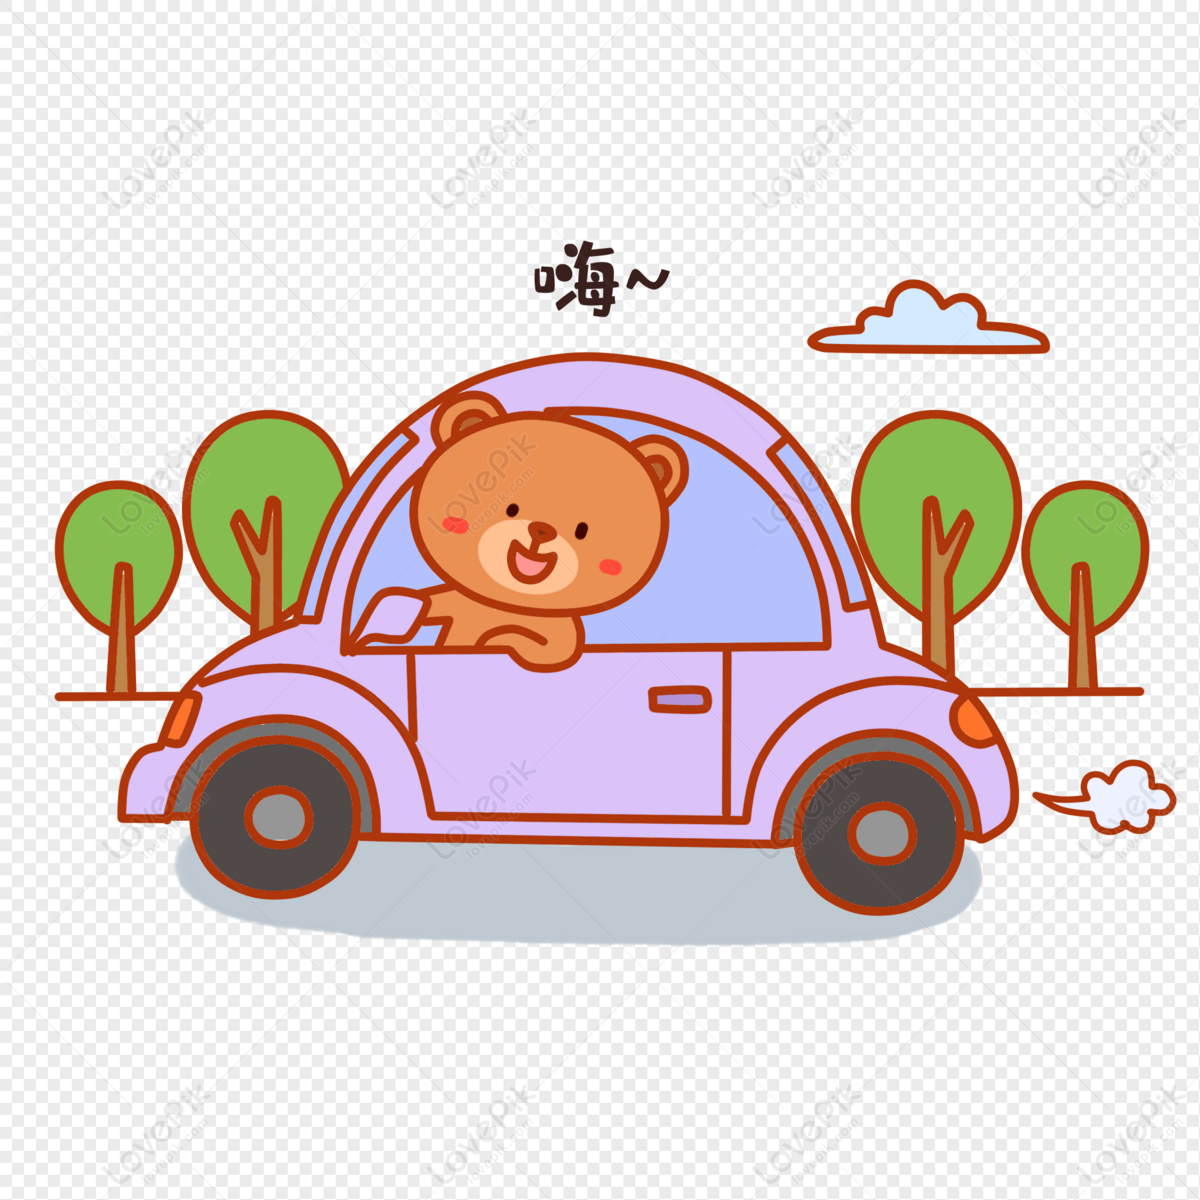 Biểu cảm lái xe cute: những cử chỉ tươi cười, sáng tạo và đáng yêu của lái xe sẽ khiến bạn cảm thấy vui và thư giãn. Hãy cùng đón xem những thước phim vui nhộn và ngộ nghĩnh này.